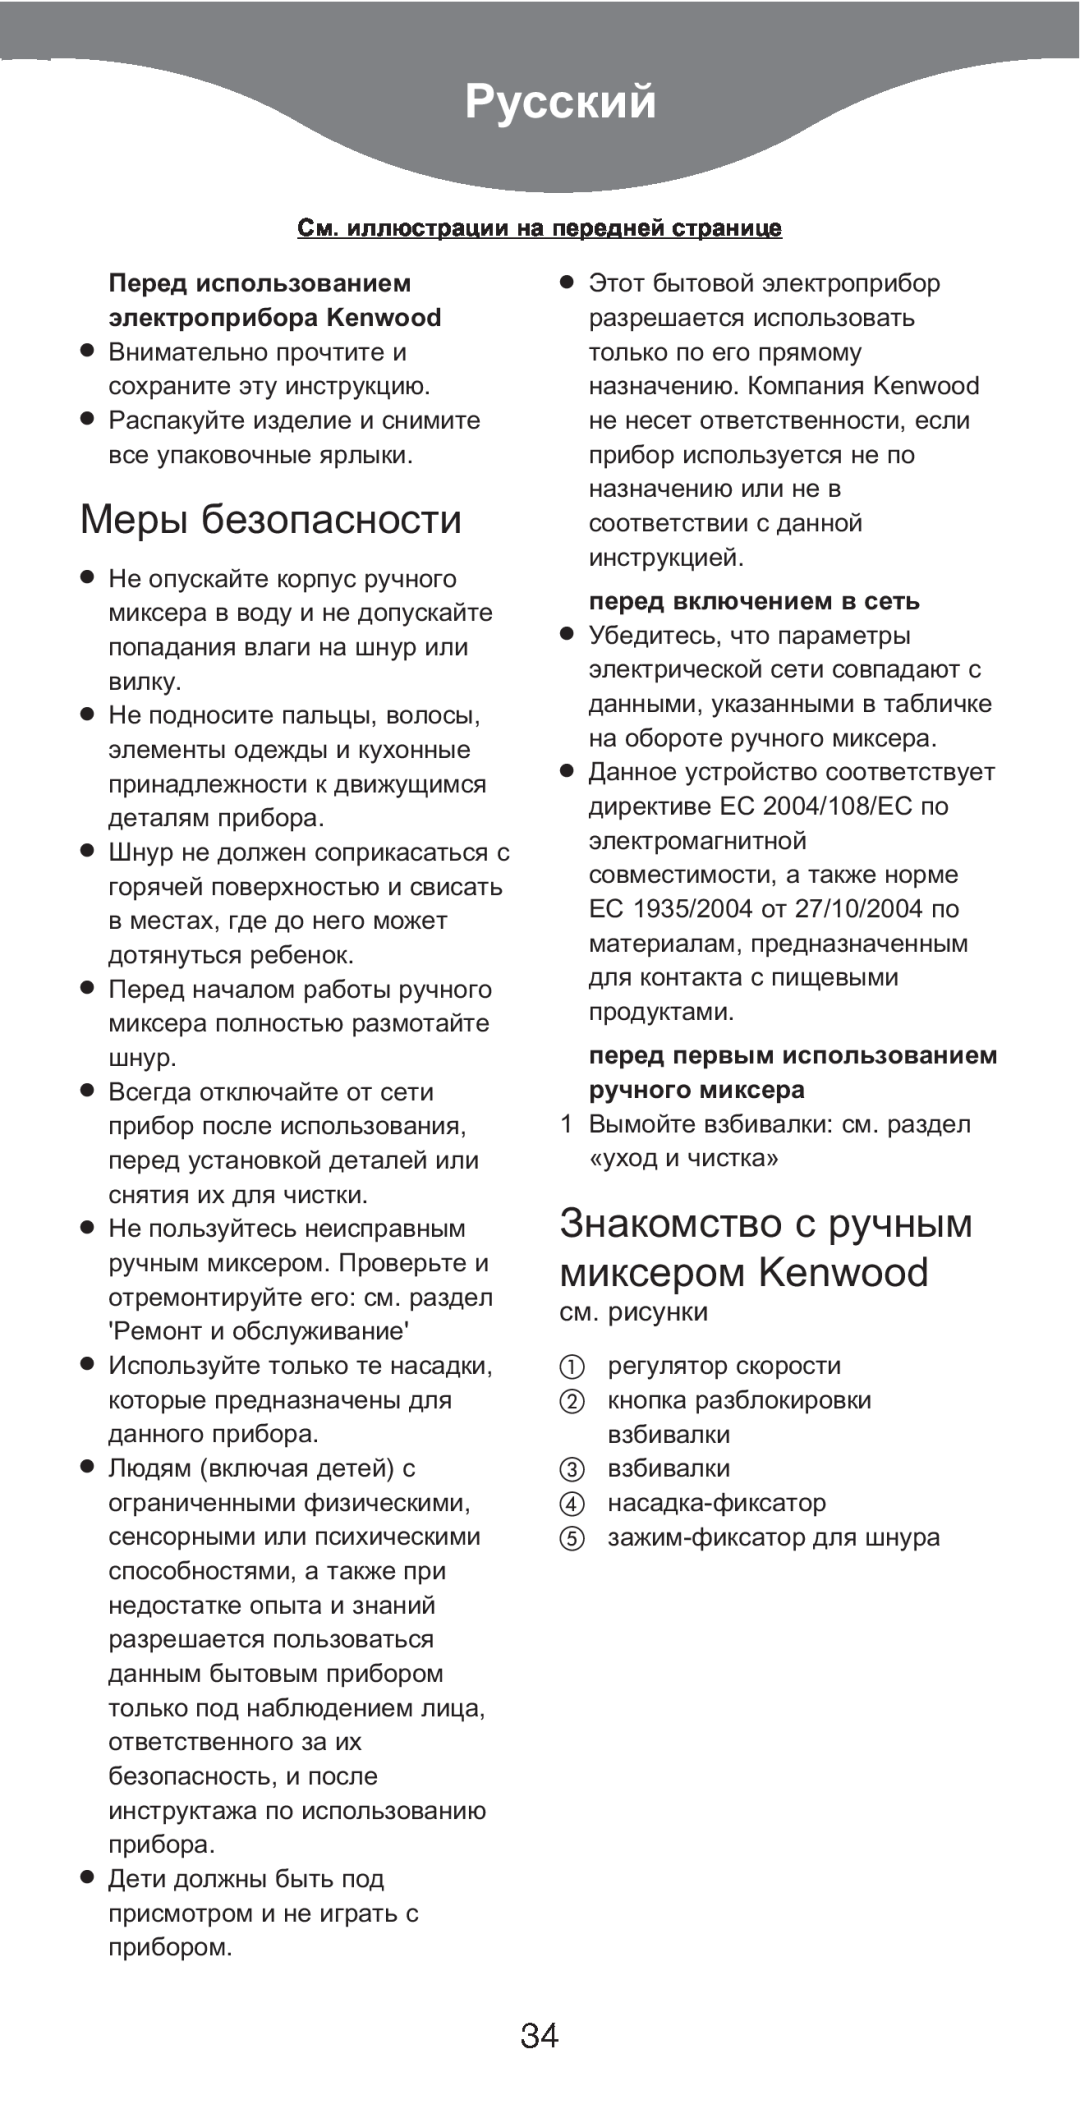 Kenwood HM226 manual Русский, Меры безопасности, Знакомство с ручным миксером Kenwood, см. рисунки, перед включением в сеть 